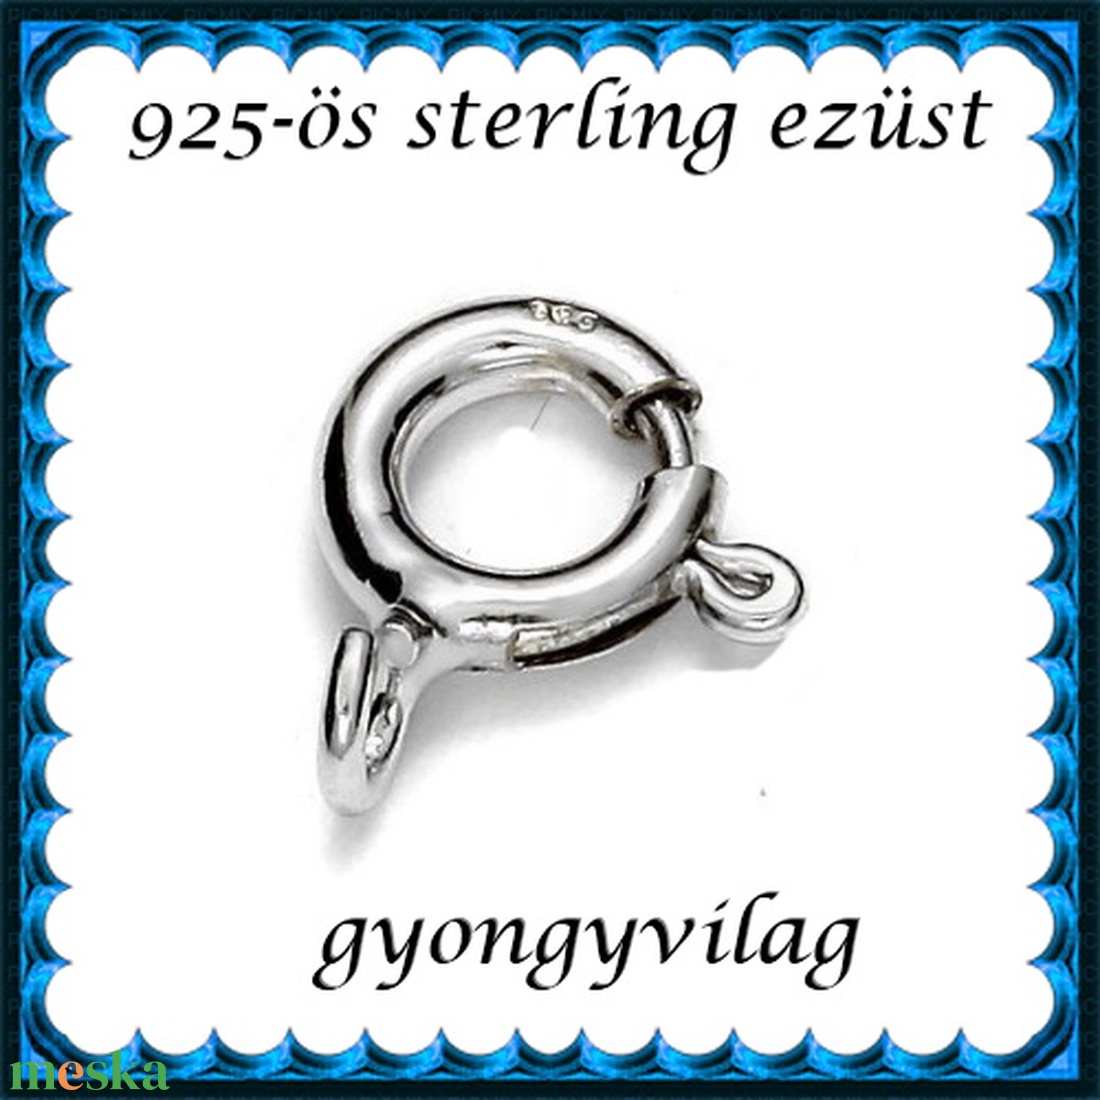 925-ös sterling ezüst ékszerkellék: lánckalocs  ELK 1S 12-9,25 - gyöngy, ékszerkellék - egyéb alkatrész - Meska.hu